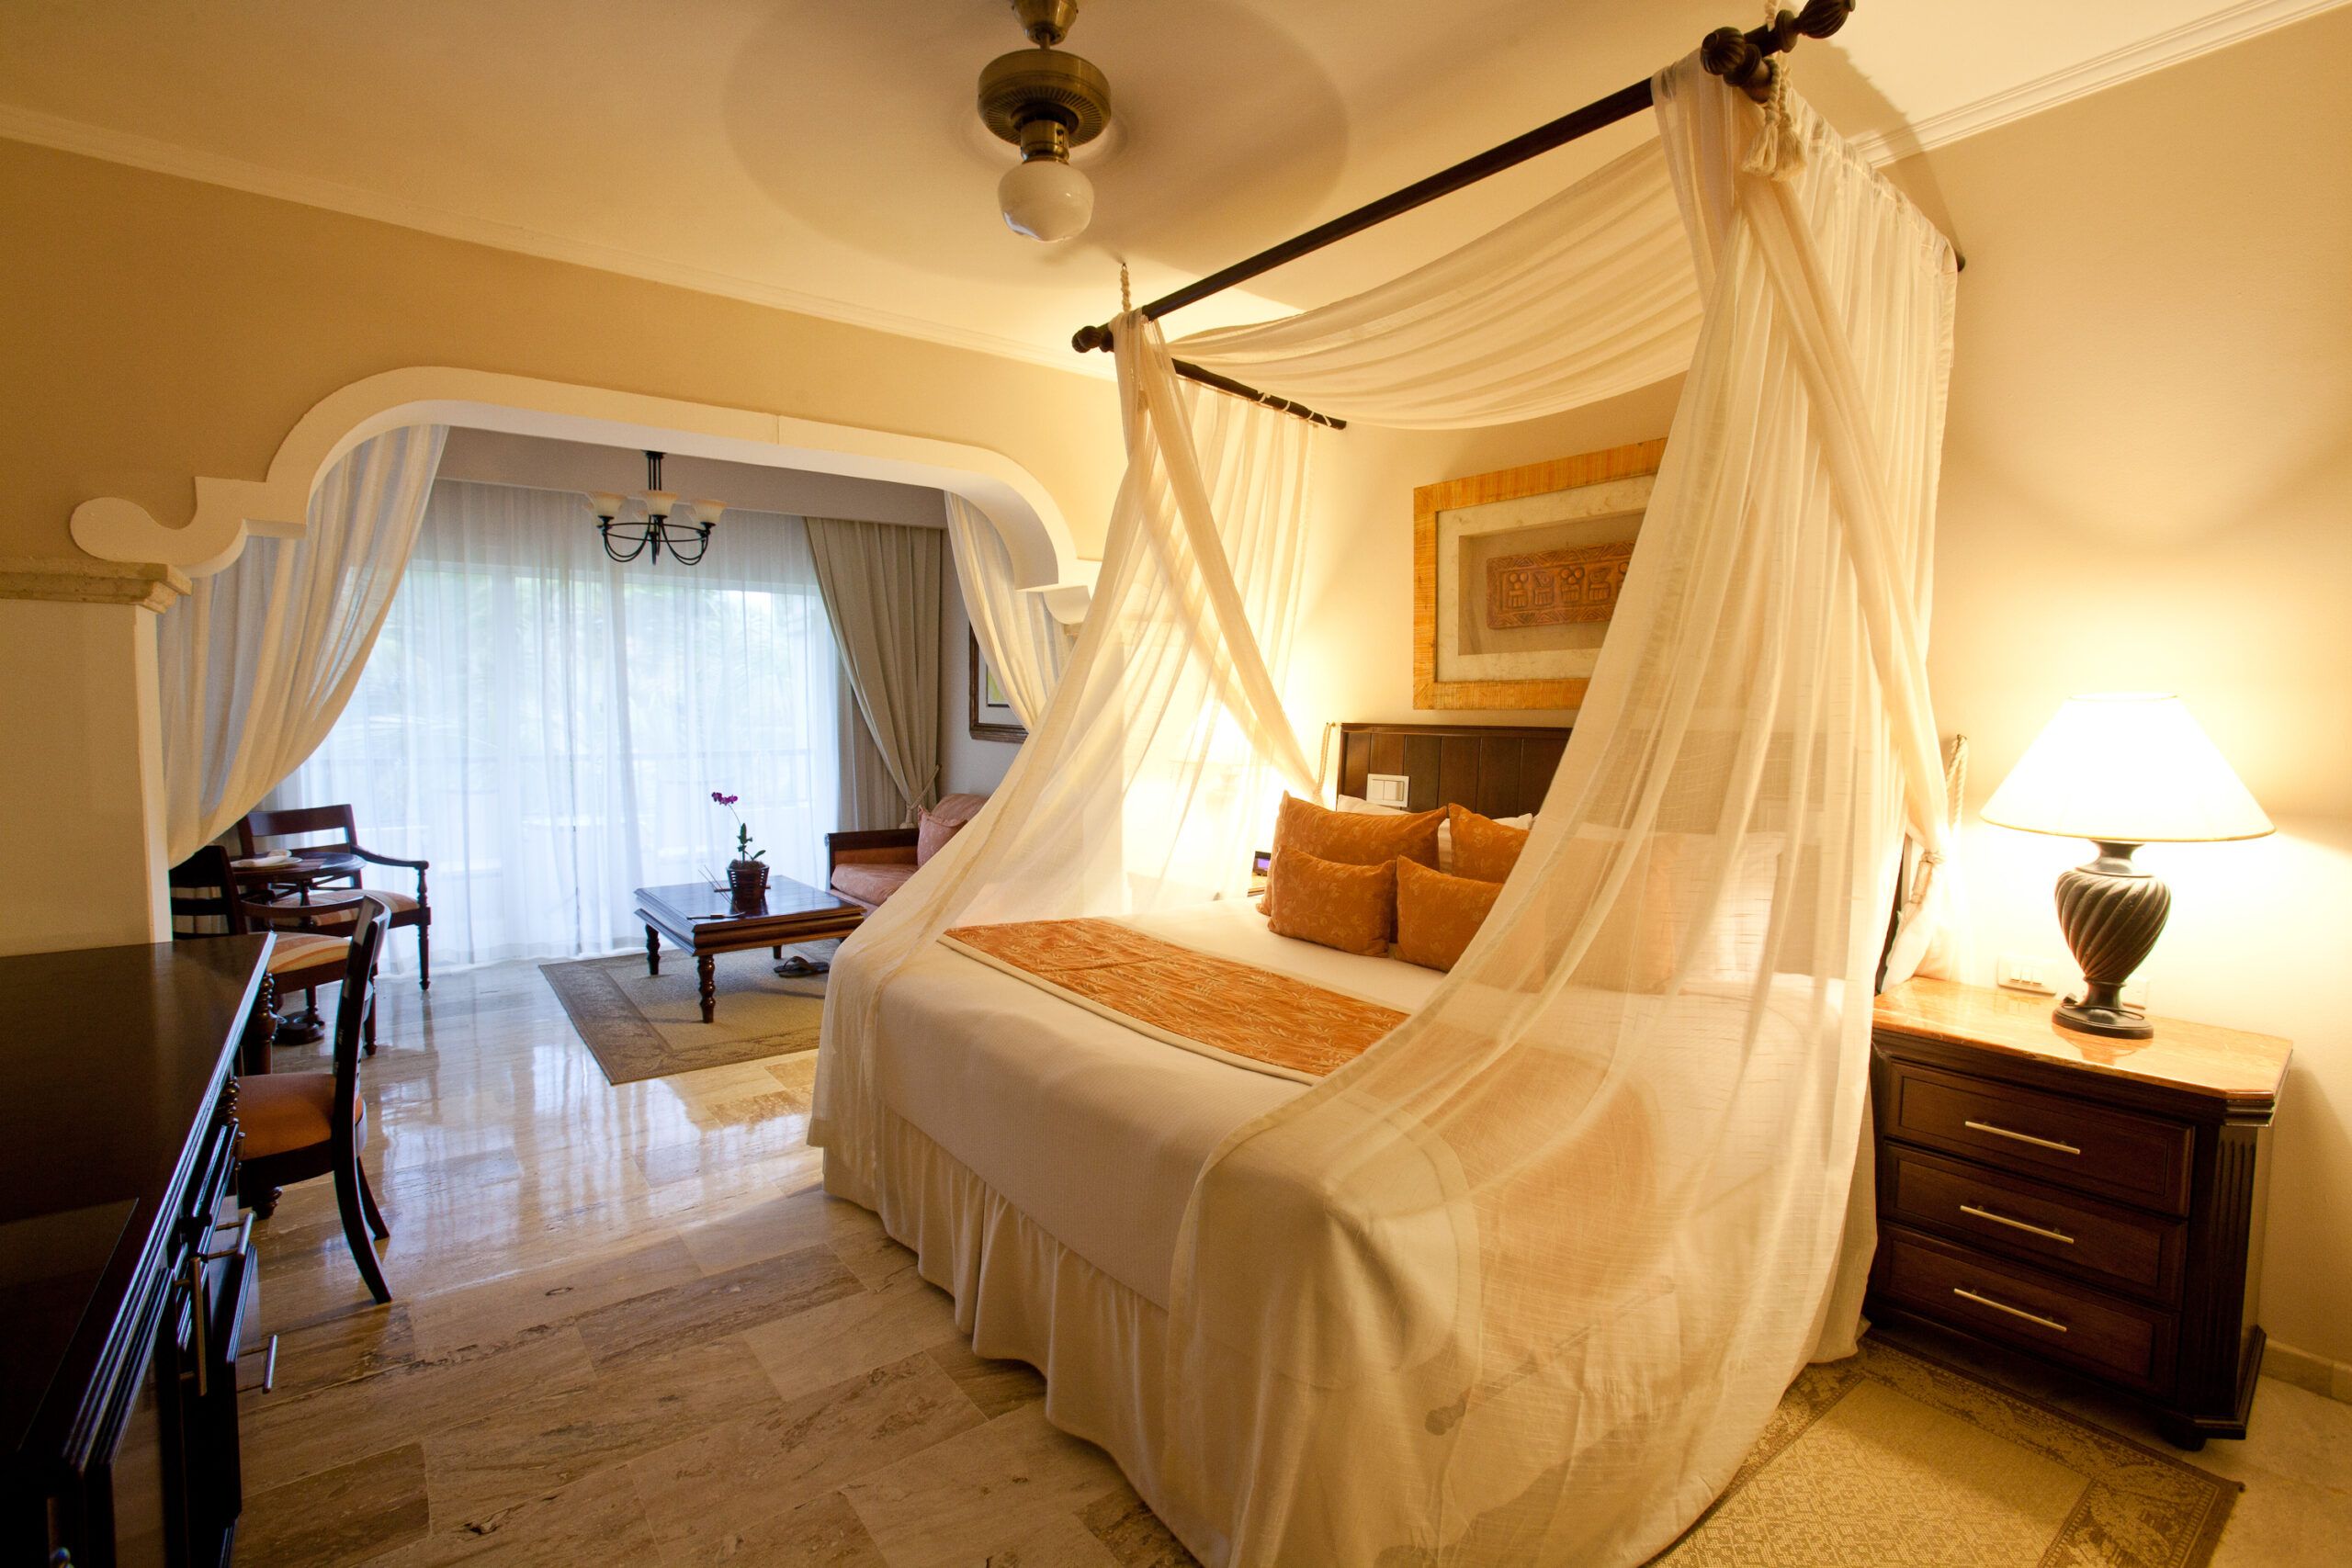 Los mejores resorts todo incluido para parejas en Punta Cana 5